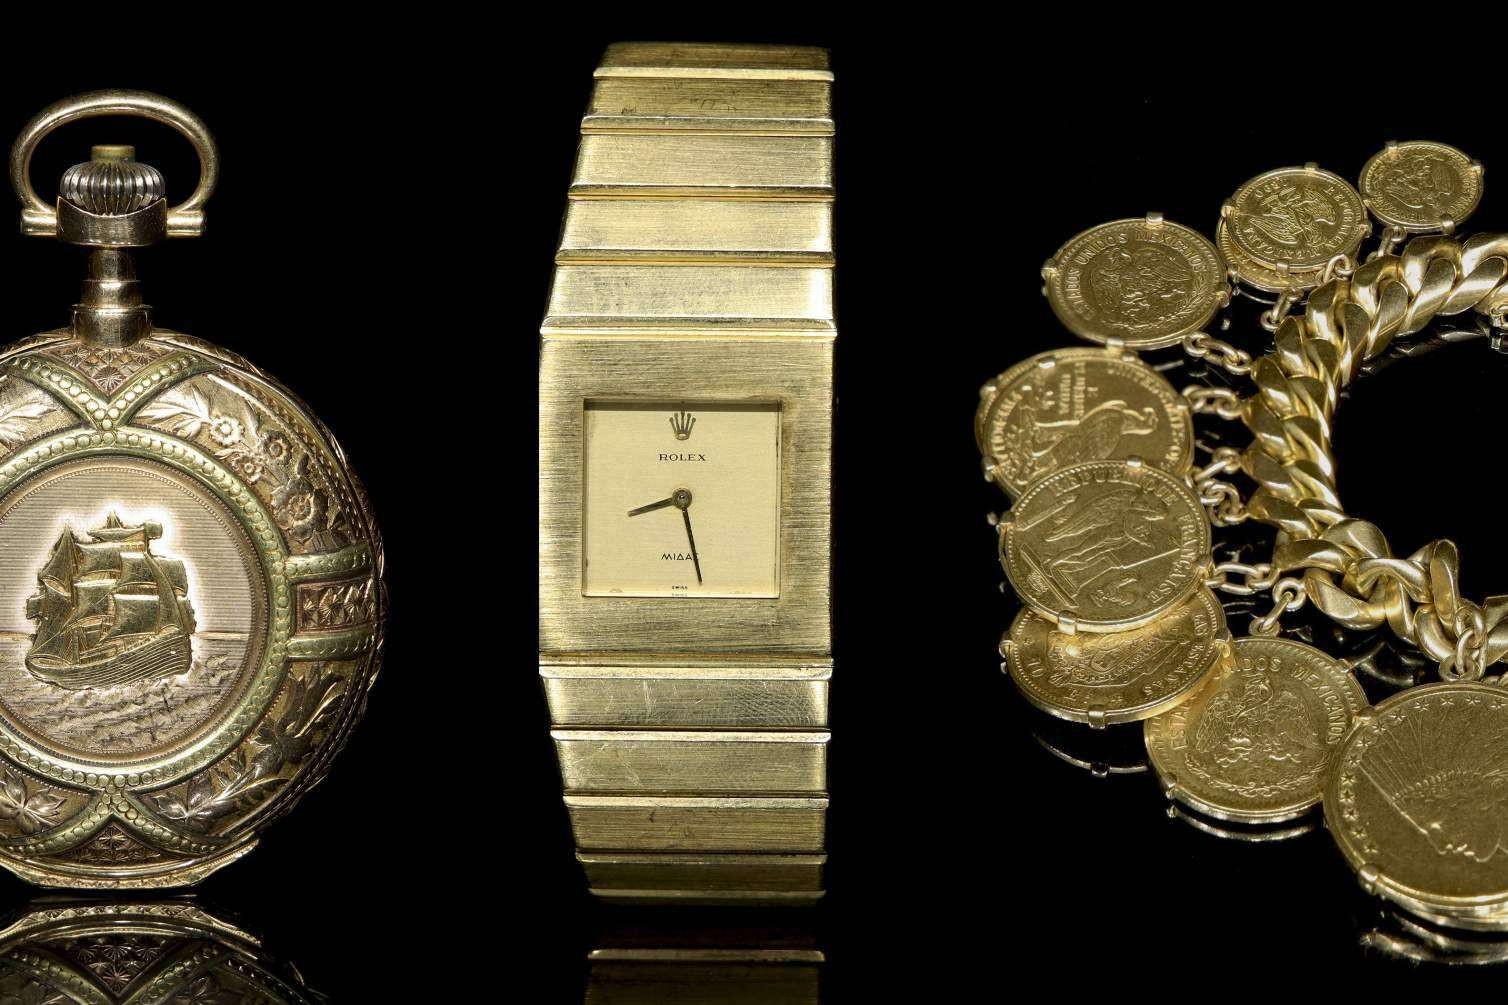  Subastas Darley deslumbró a coleccionistas con su subasta presencial de joyería, relojería y numismática 